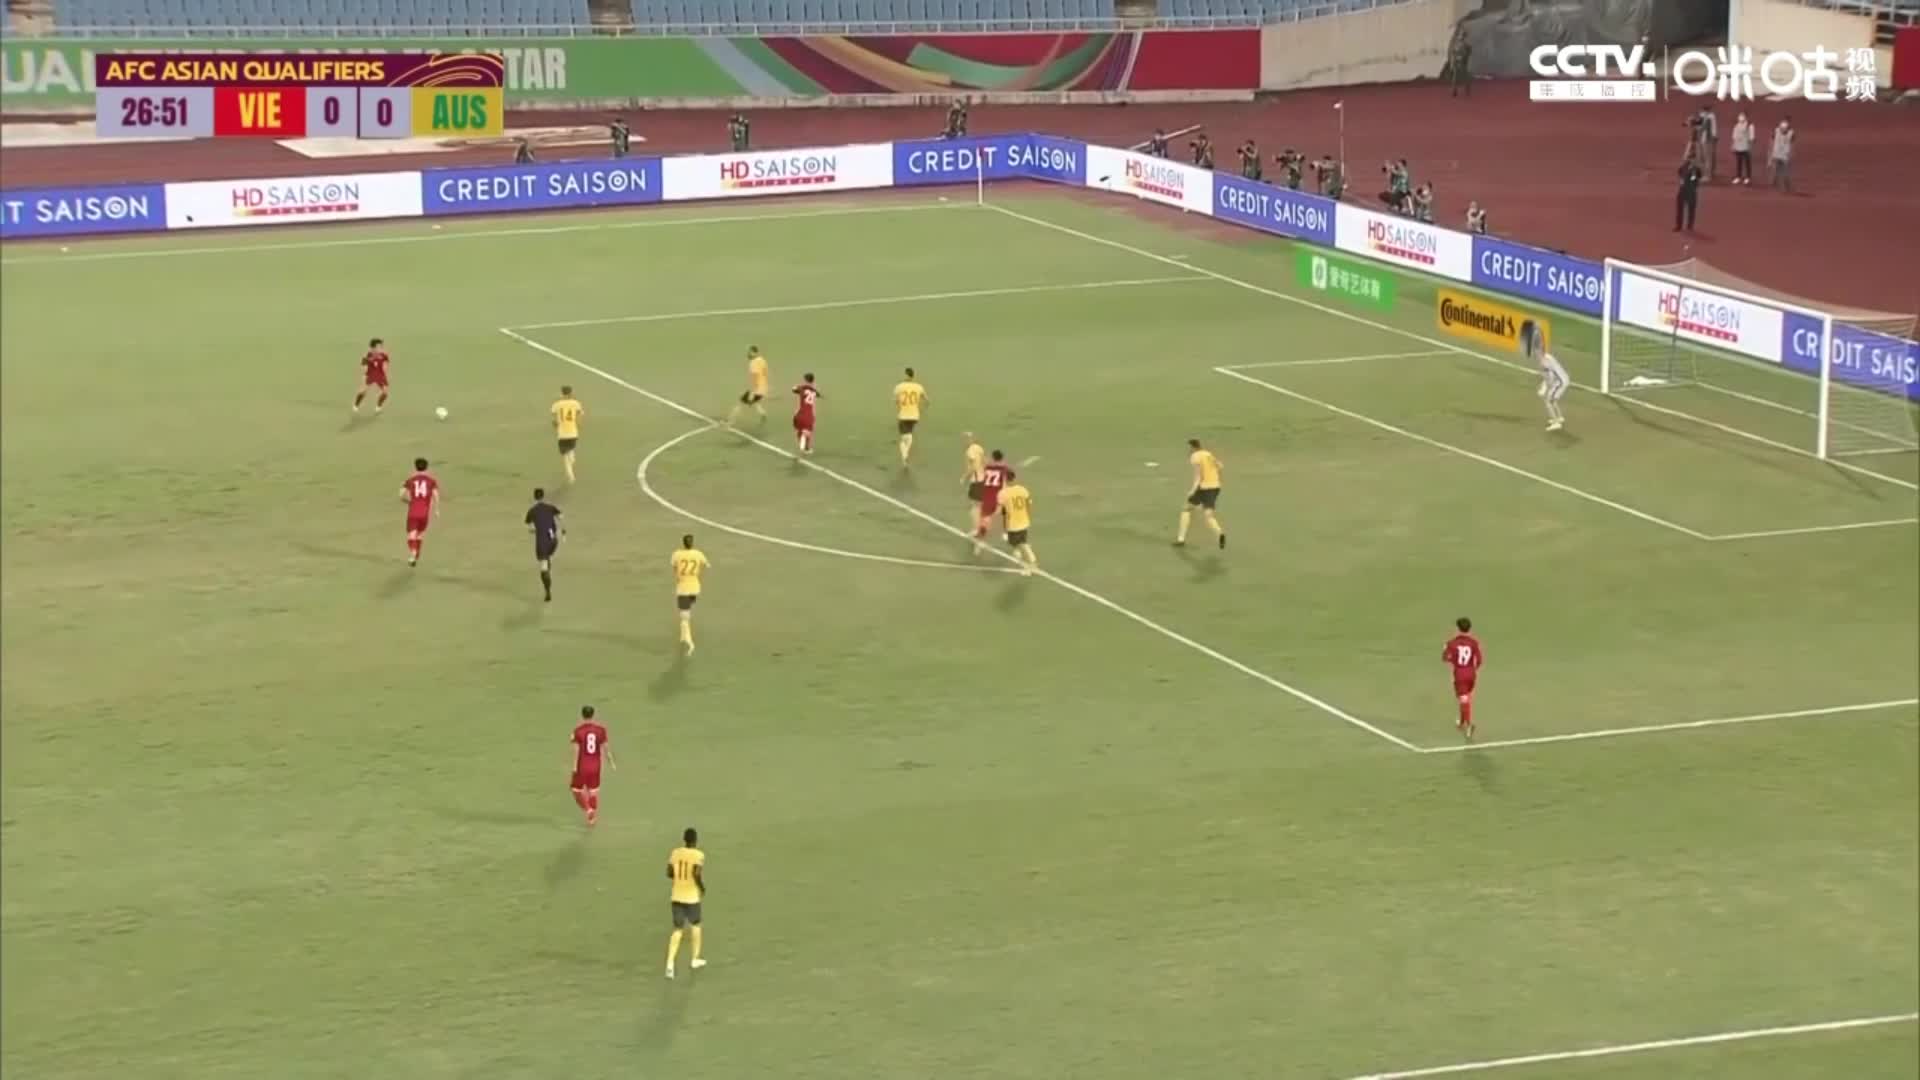 越南球员远射 澳大利亚球员手球 裁判未判点